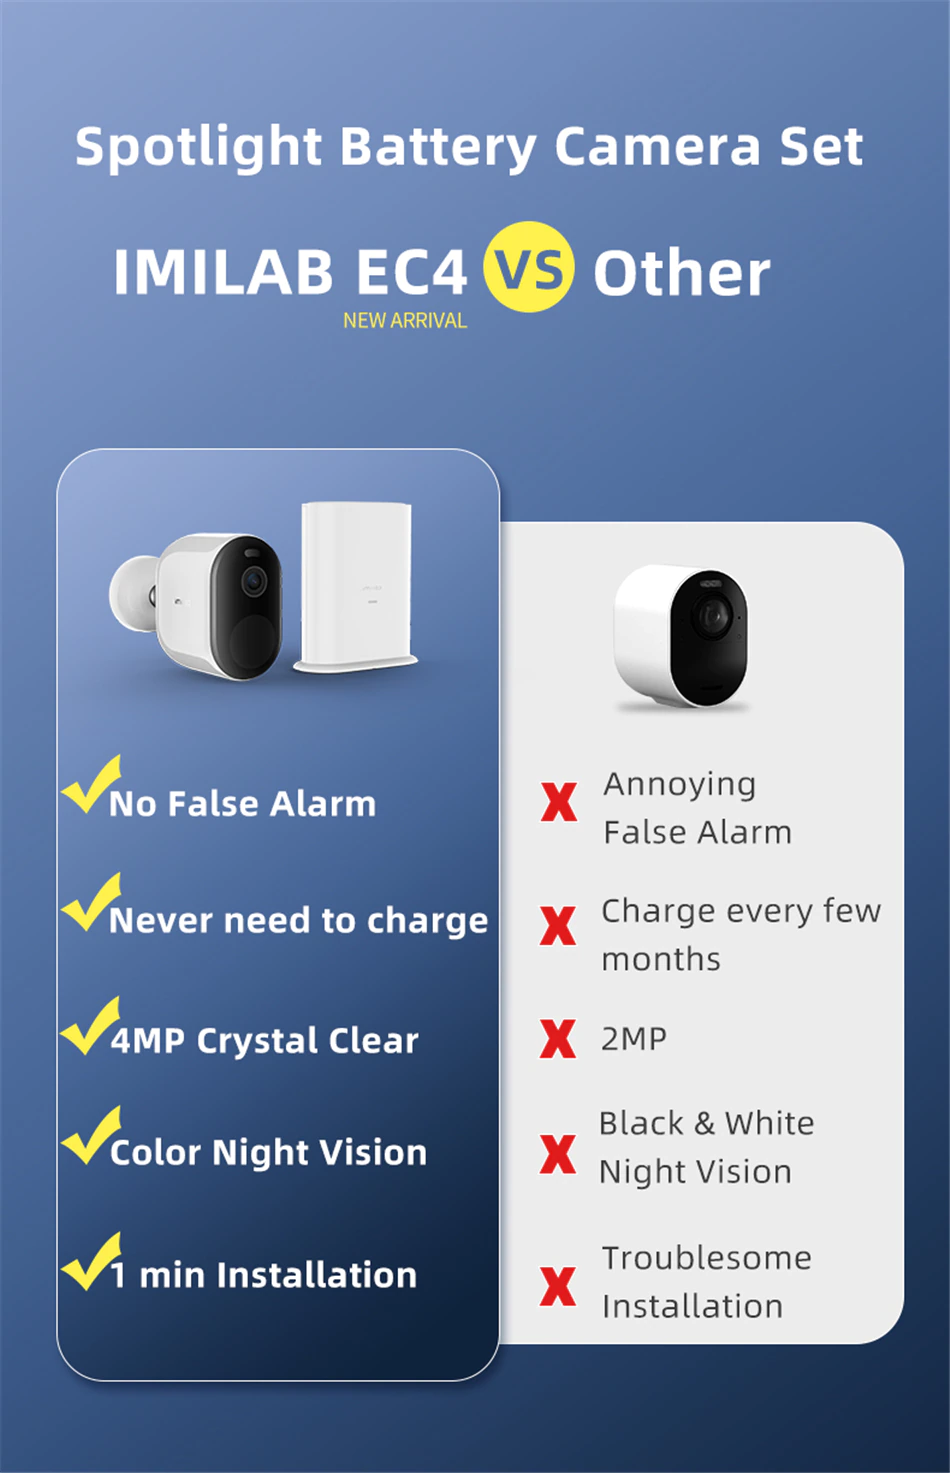 Imilab EC4 Spotlight  Battery Camera